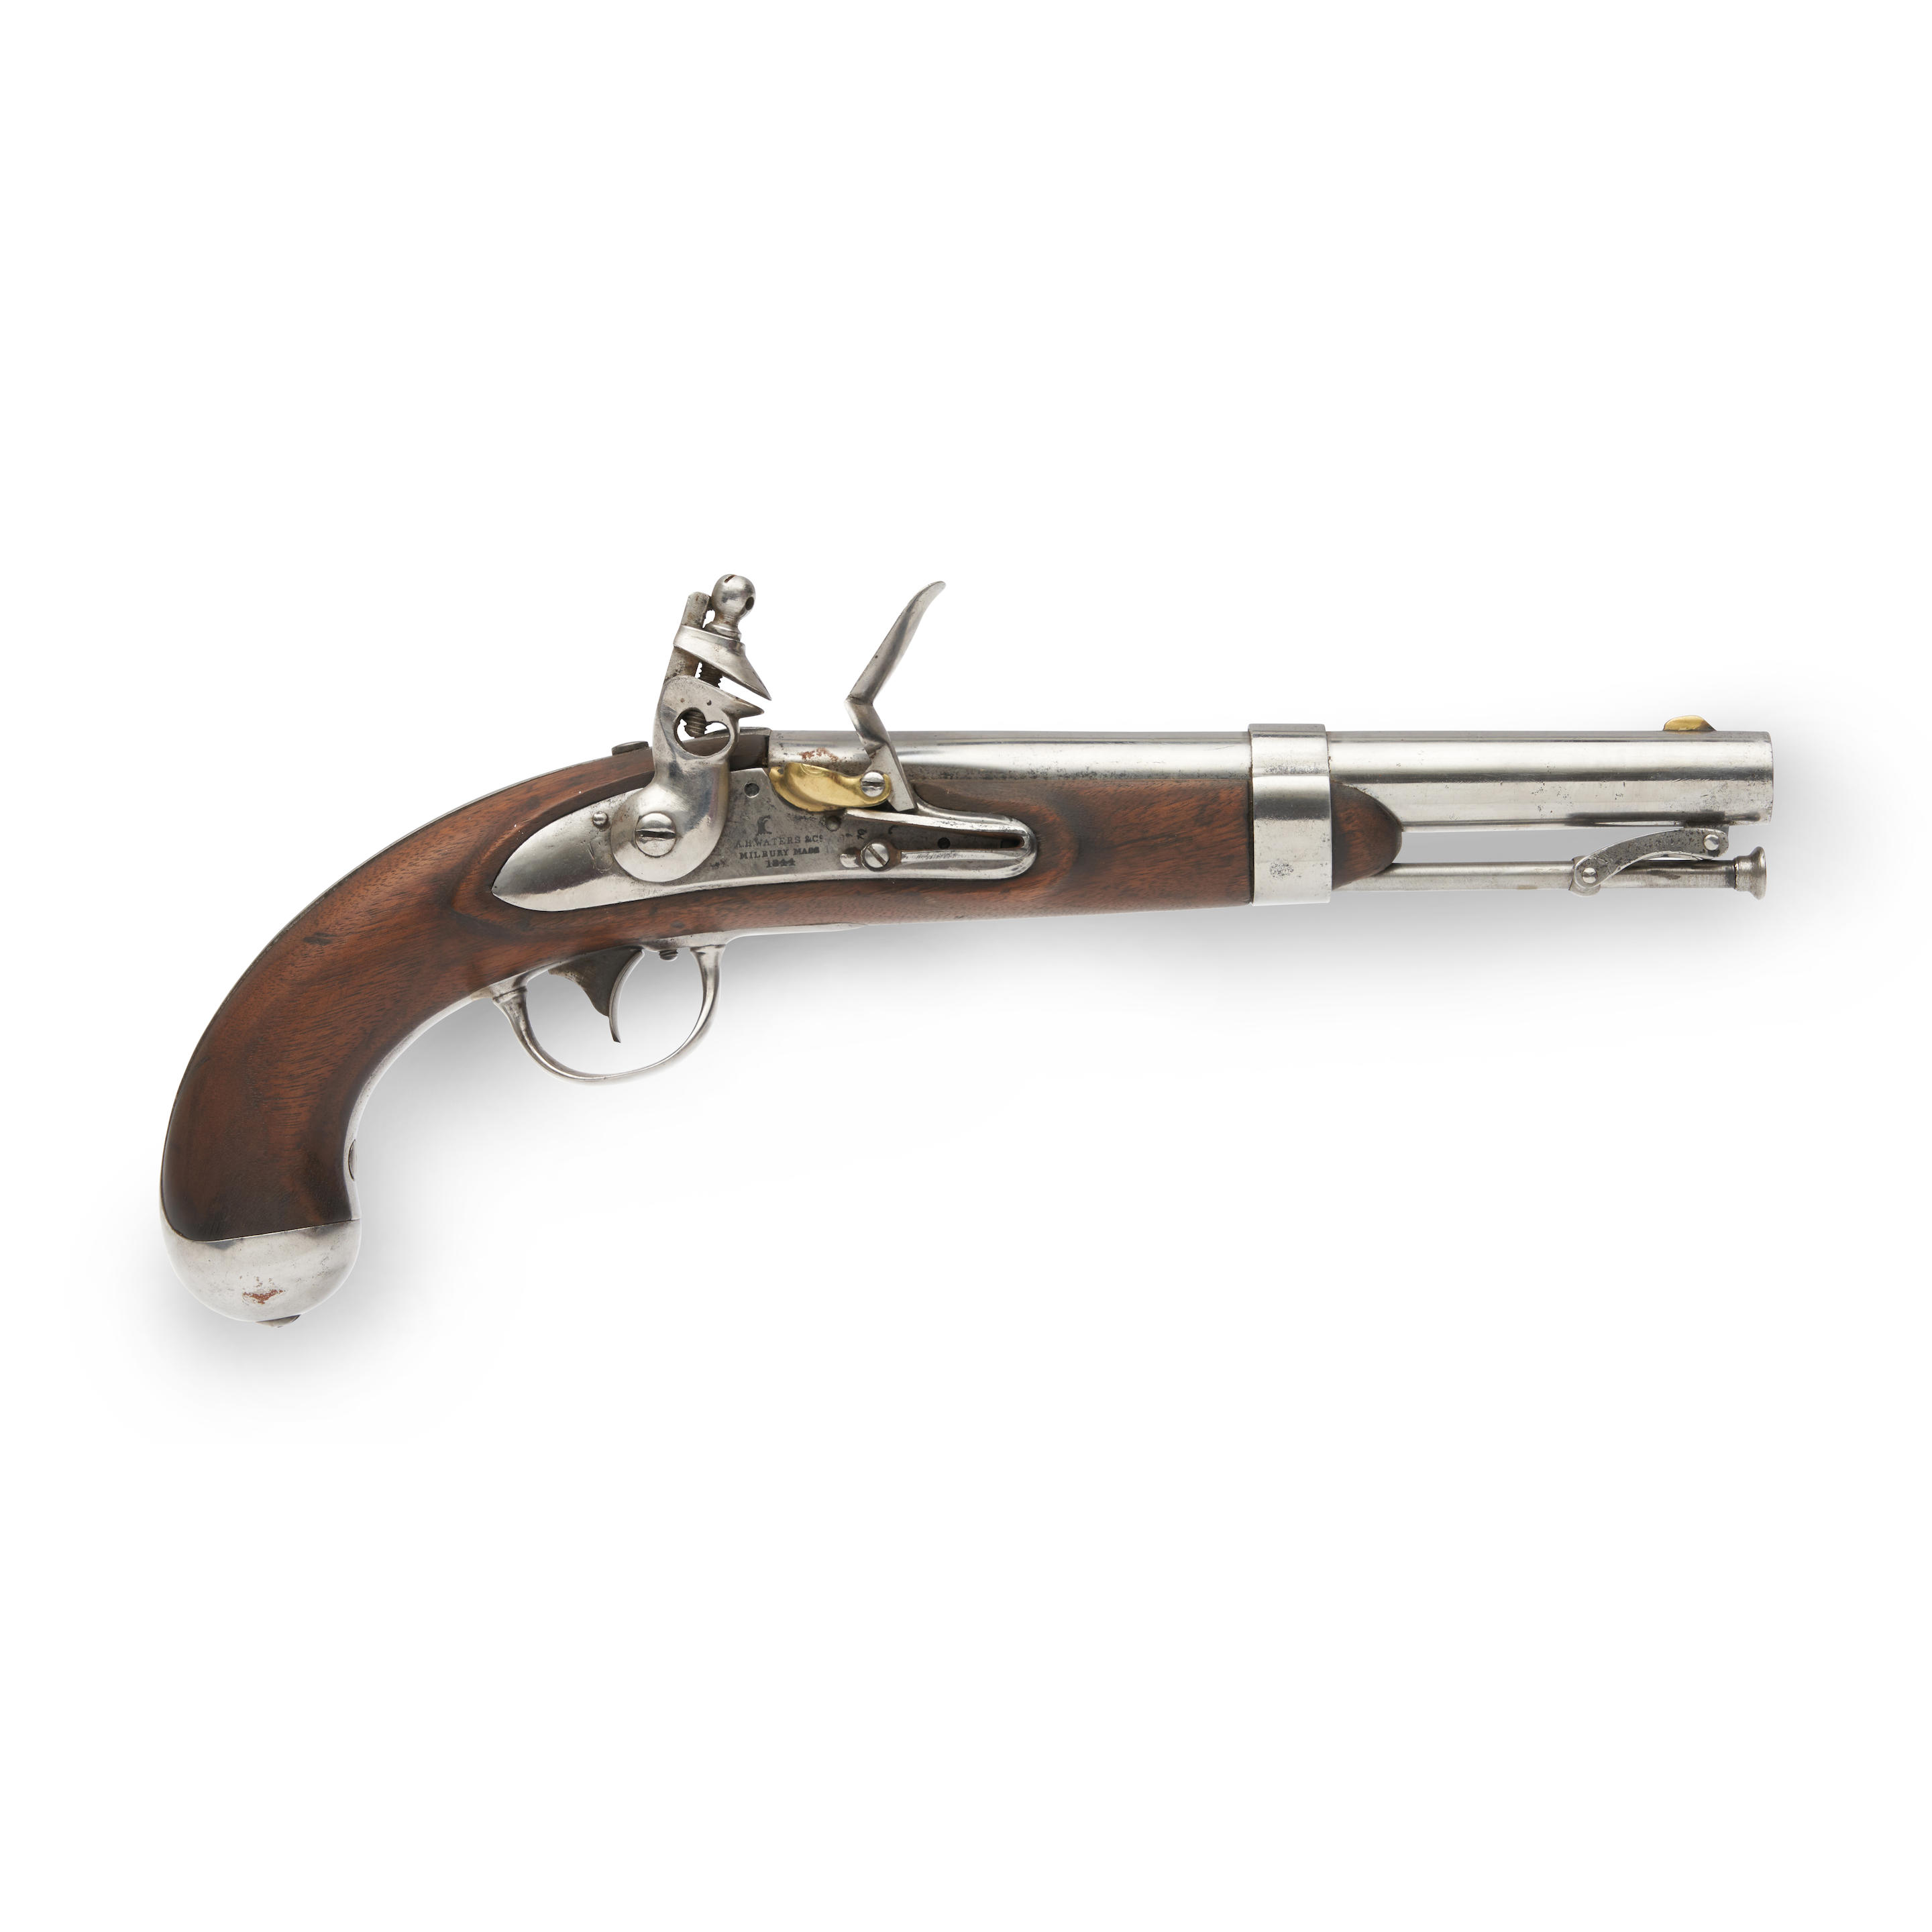 Sold at Auction: US CIVIL WAR UNION COLT GUN POWDER CANNON FLASK